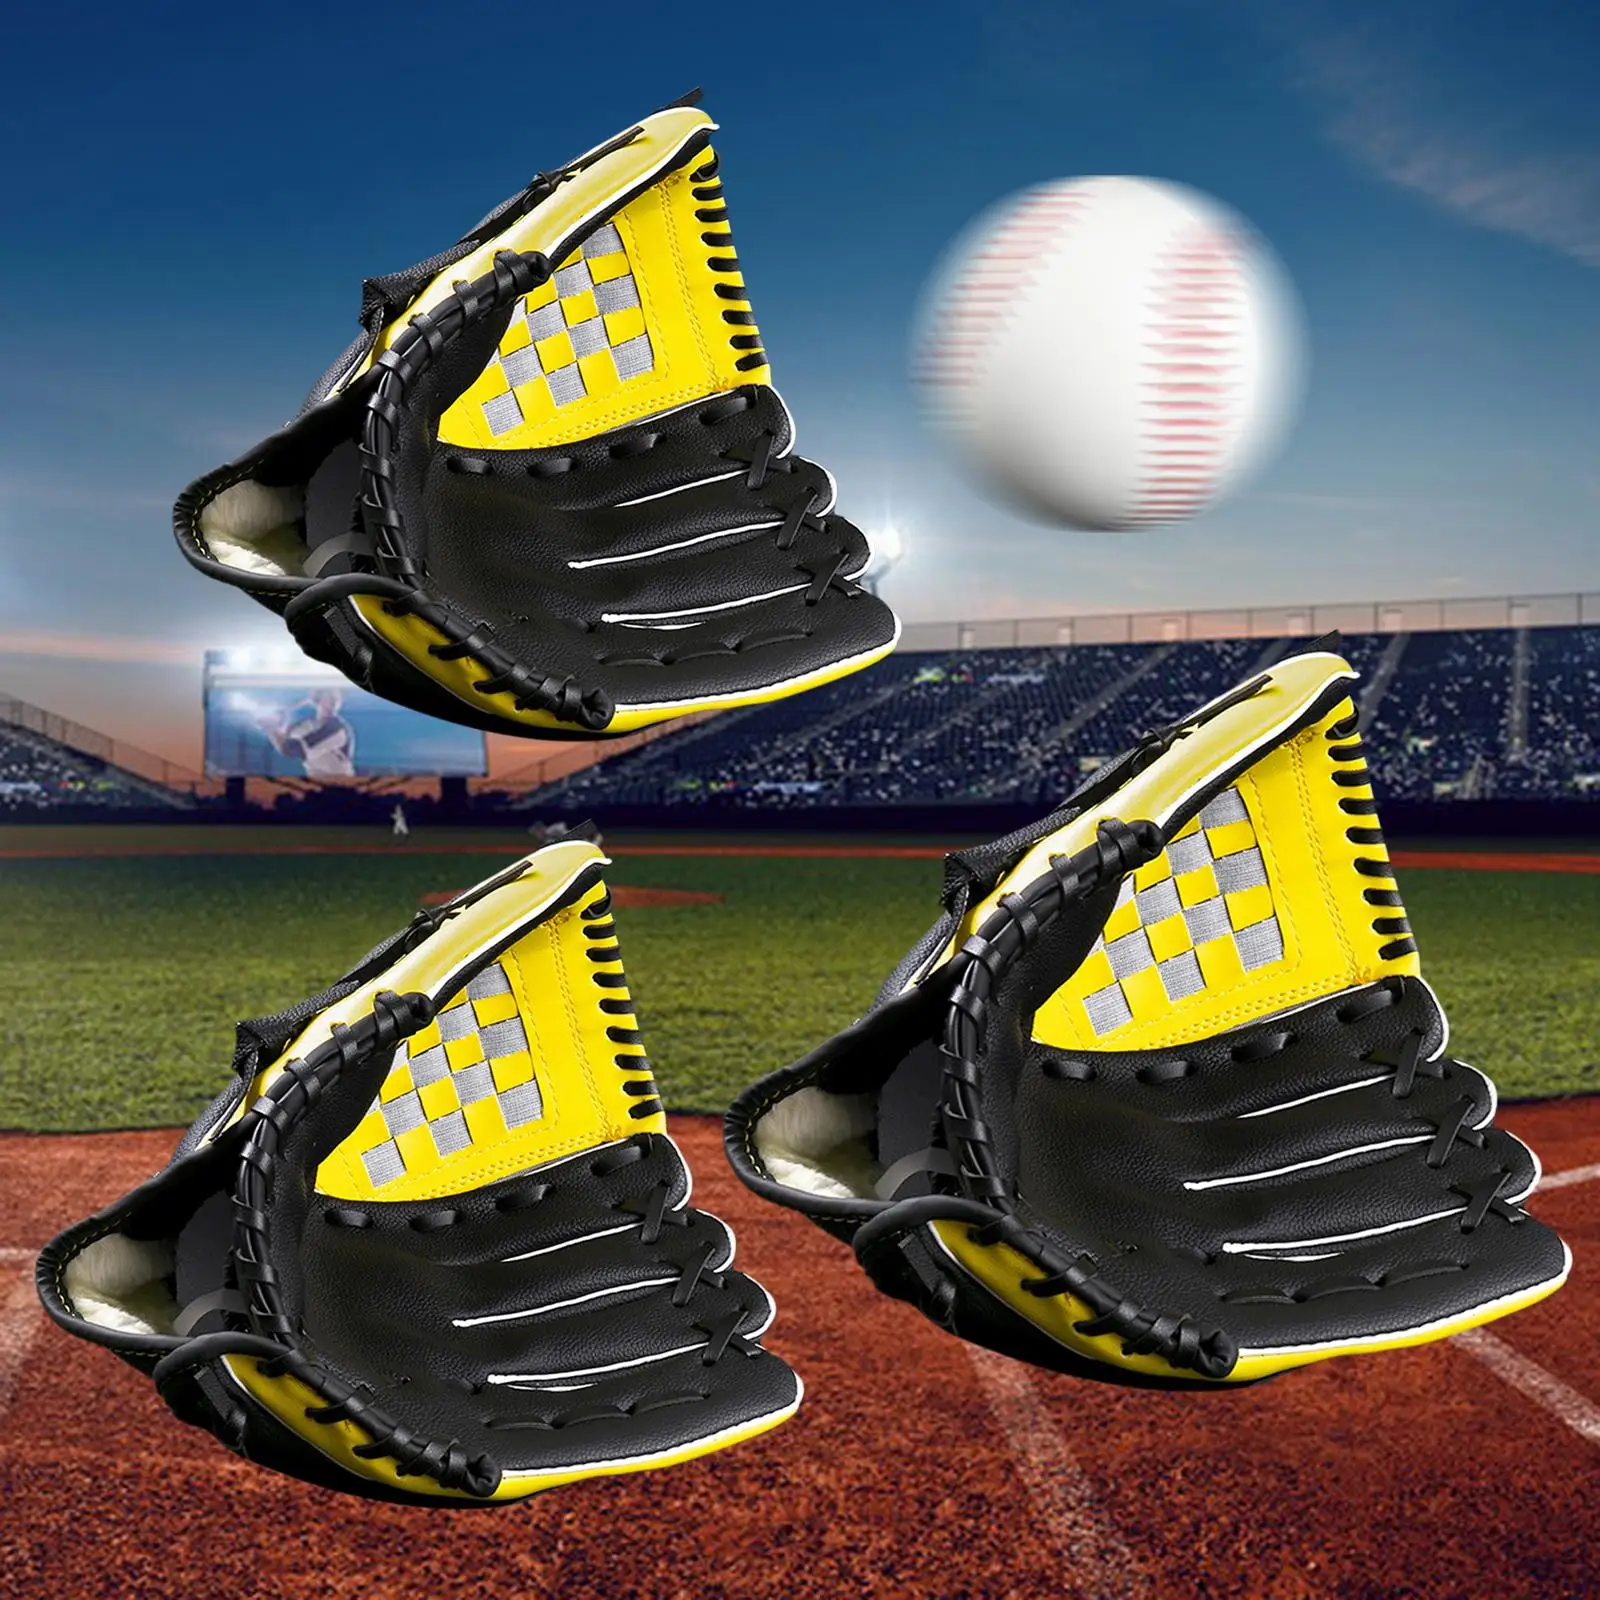 Baseball Glove Catchers PU for Beginners Training Practice Equipment